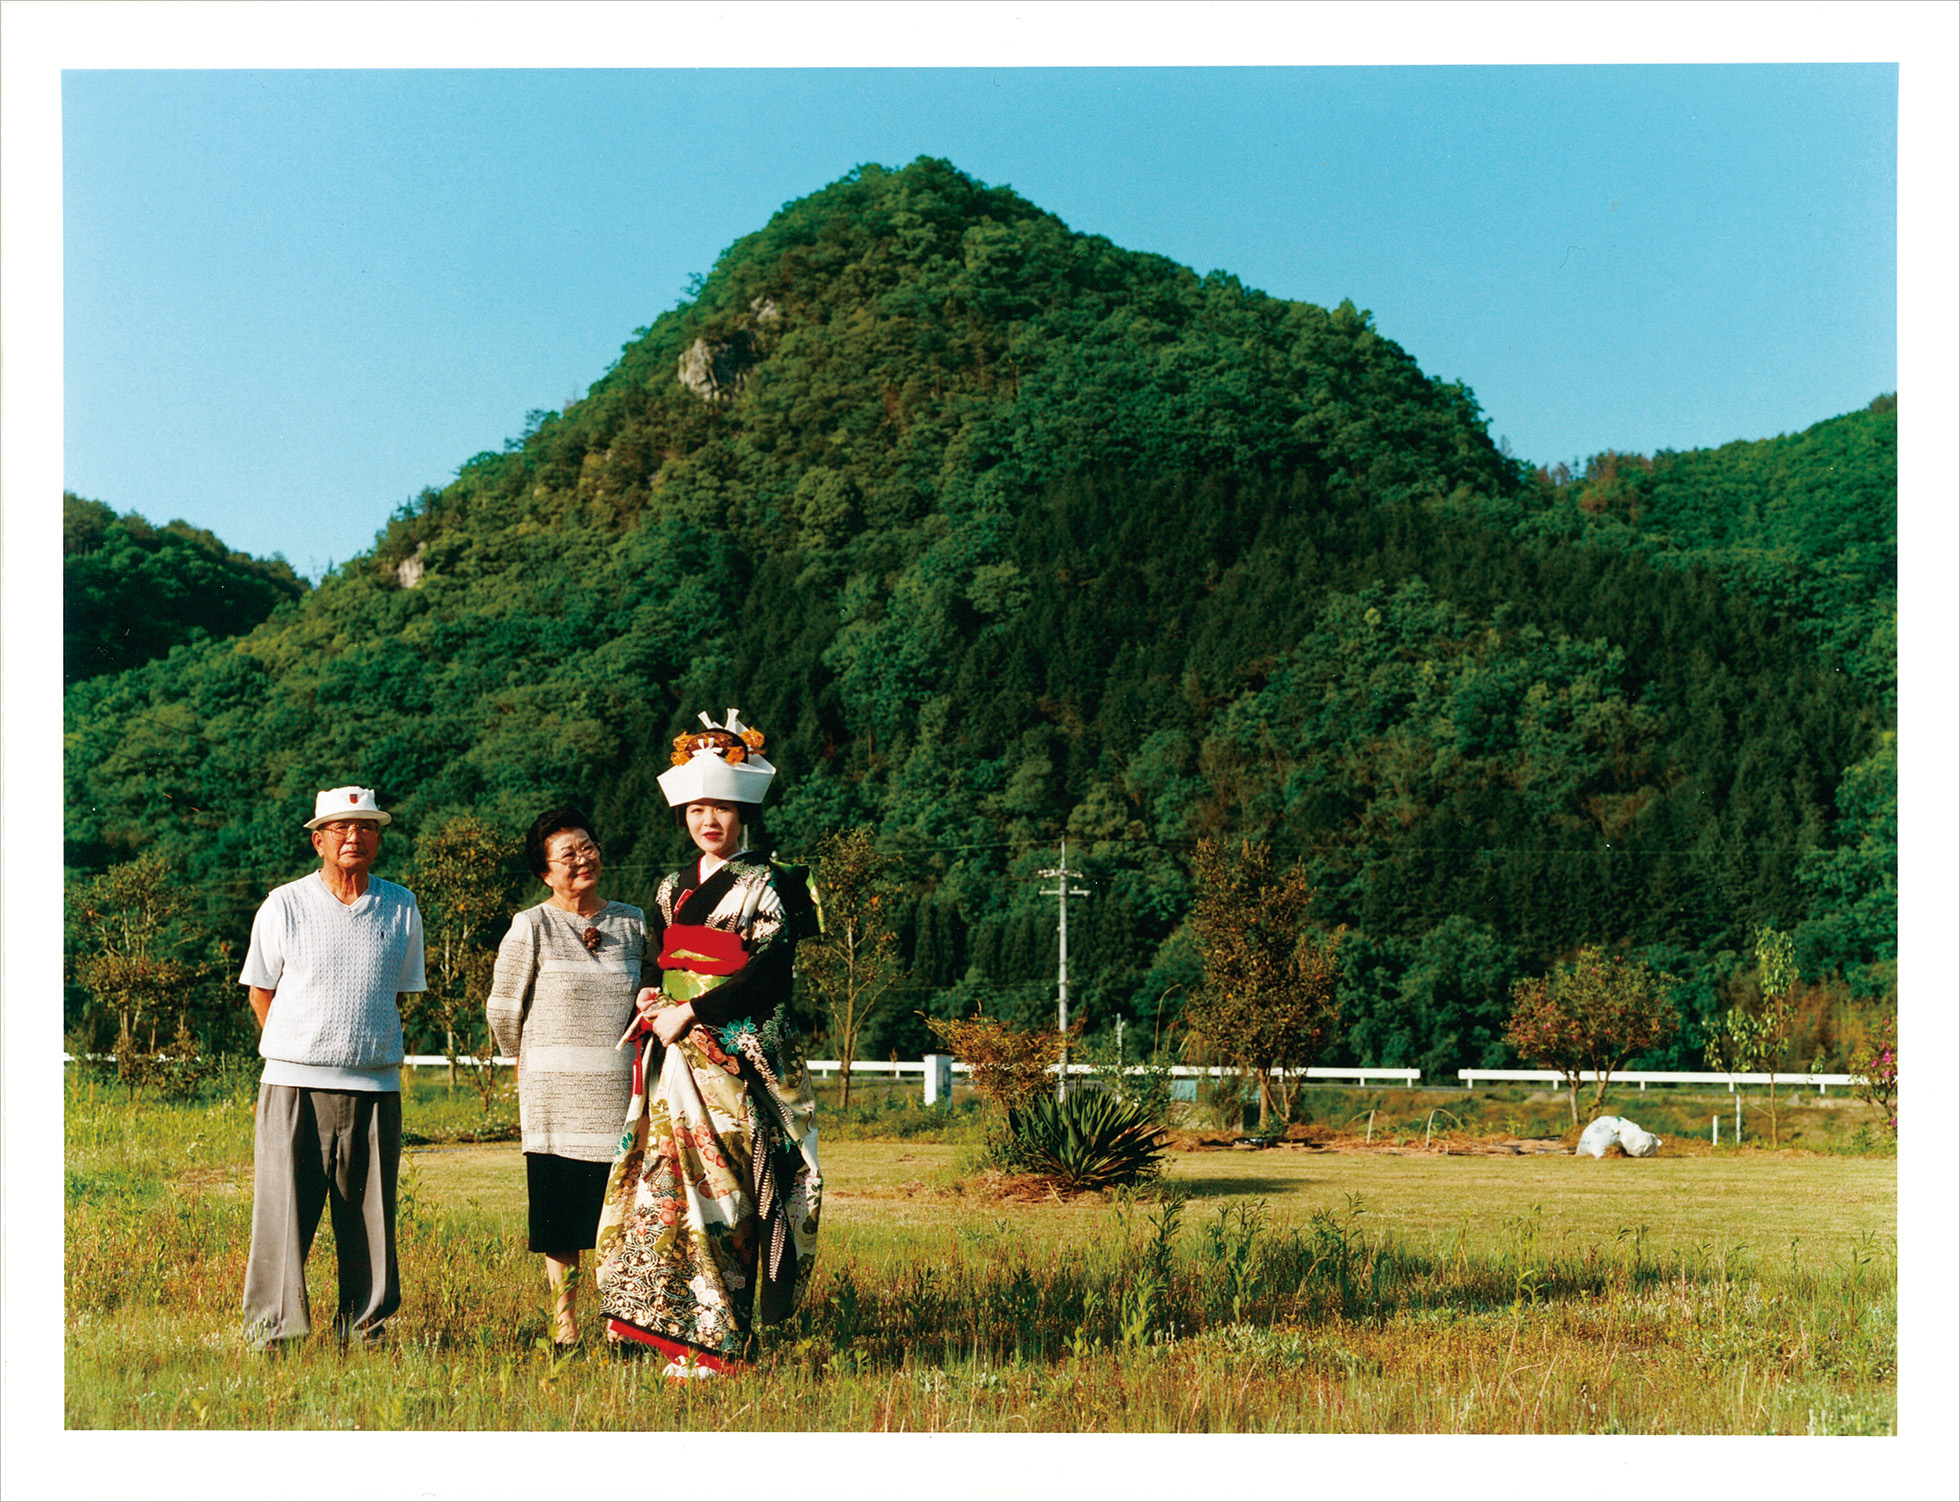 実家のある岡山で、おじい様、おばあ様と撮ったワキリエさんの結婚写真。おばあ様の優しい眼差しが、ワキリエさんに向けられている